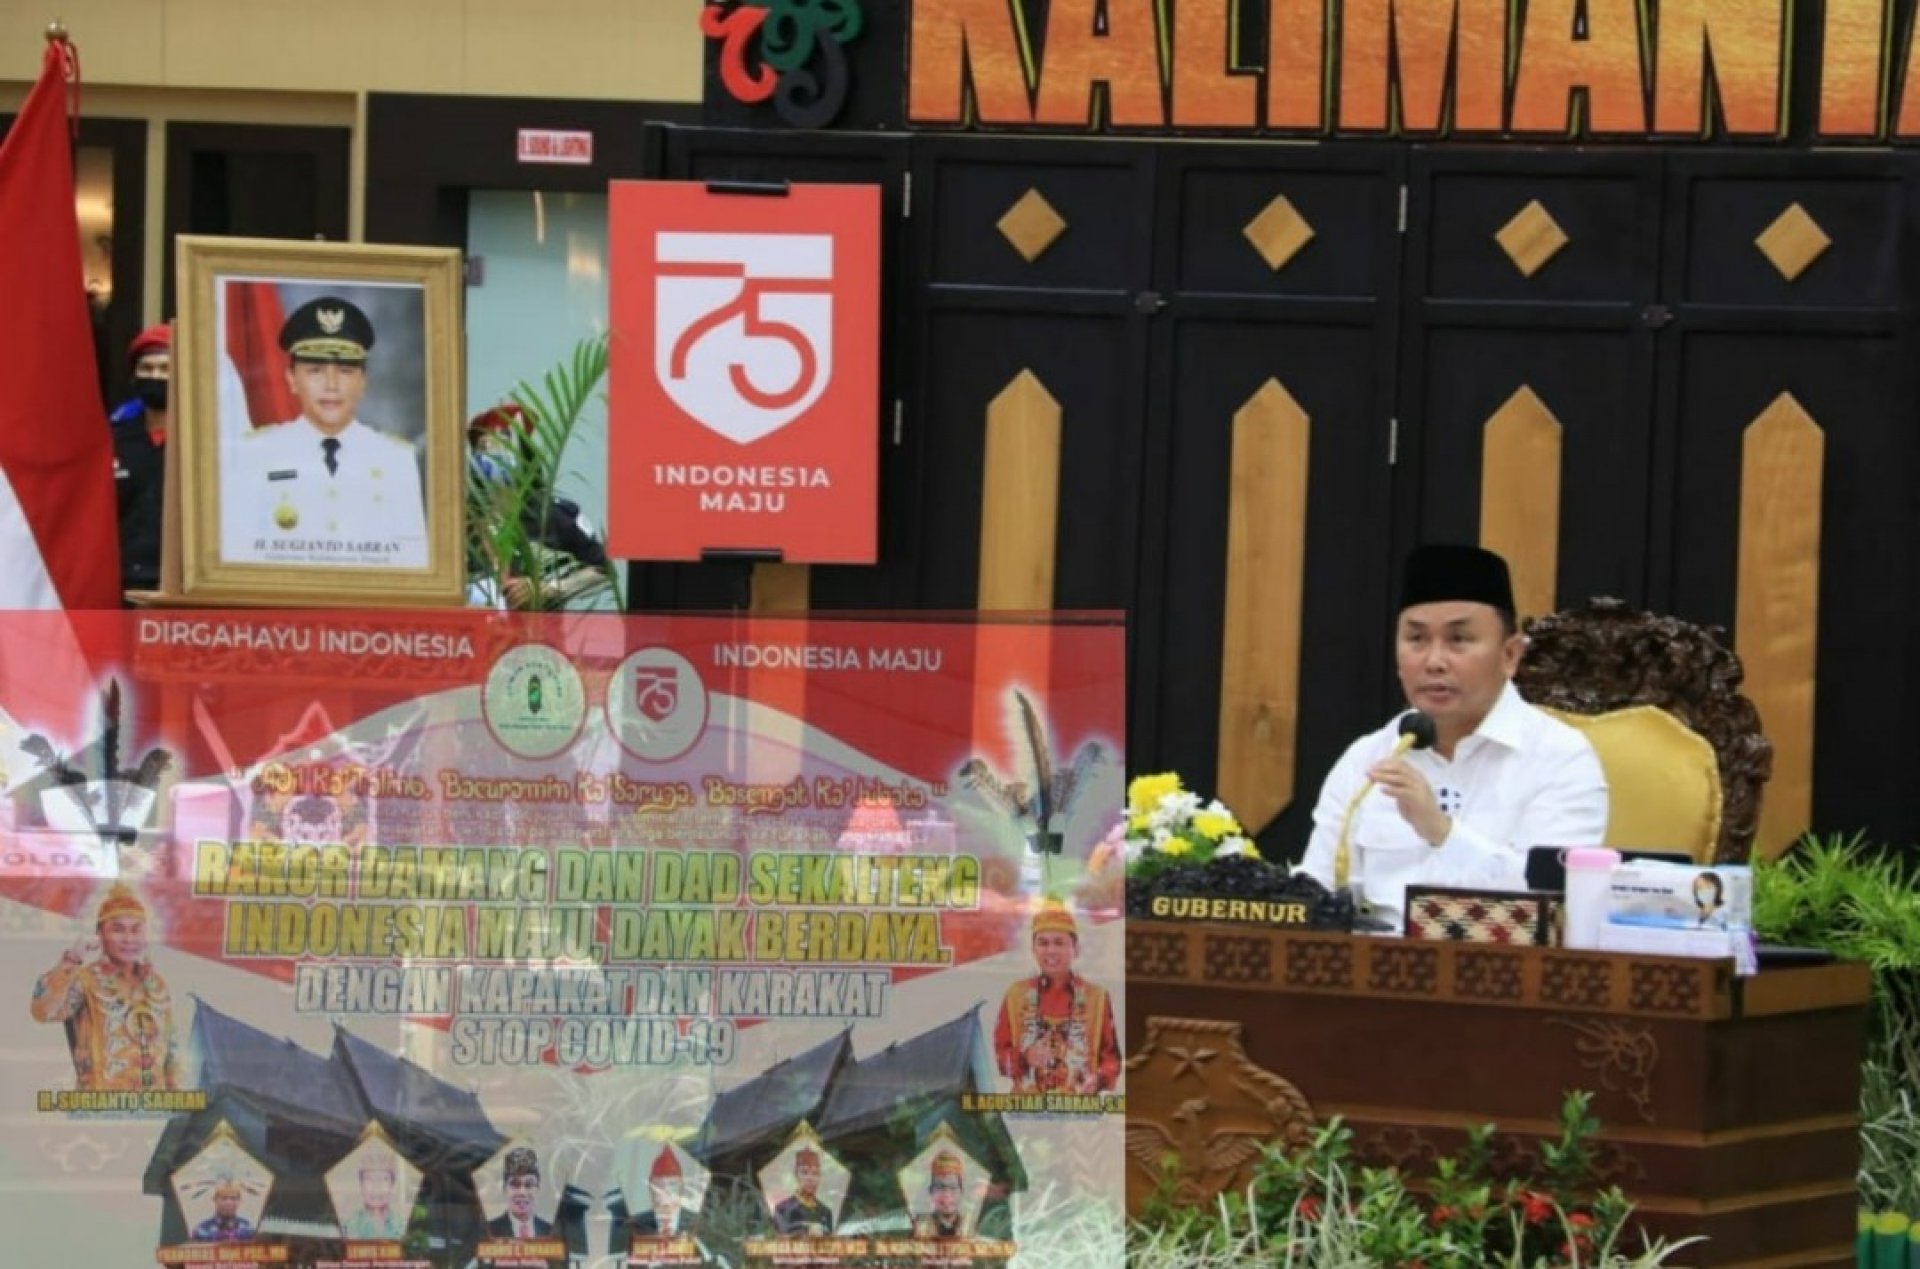 Gubernur Sugianto Sabran Buka Rakor Damang dan DAD se-Kalimantan Tengah